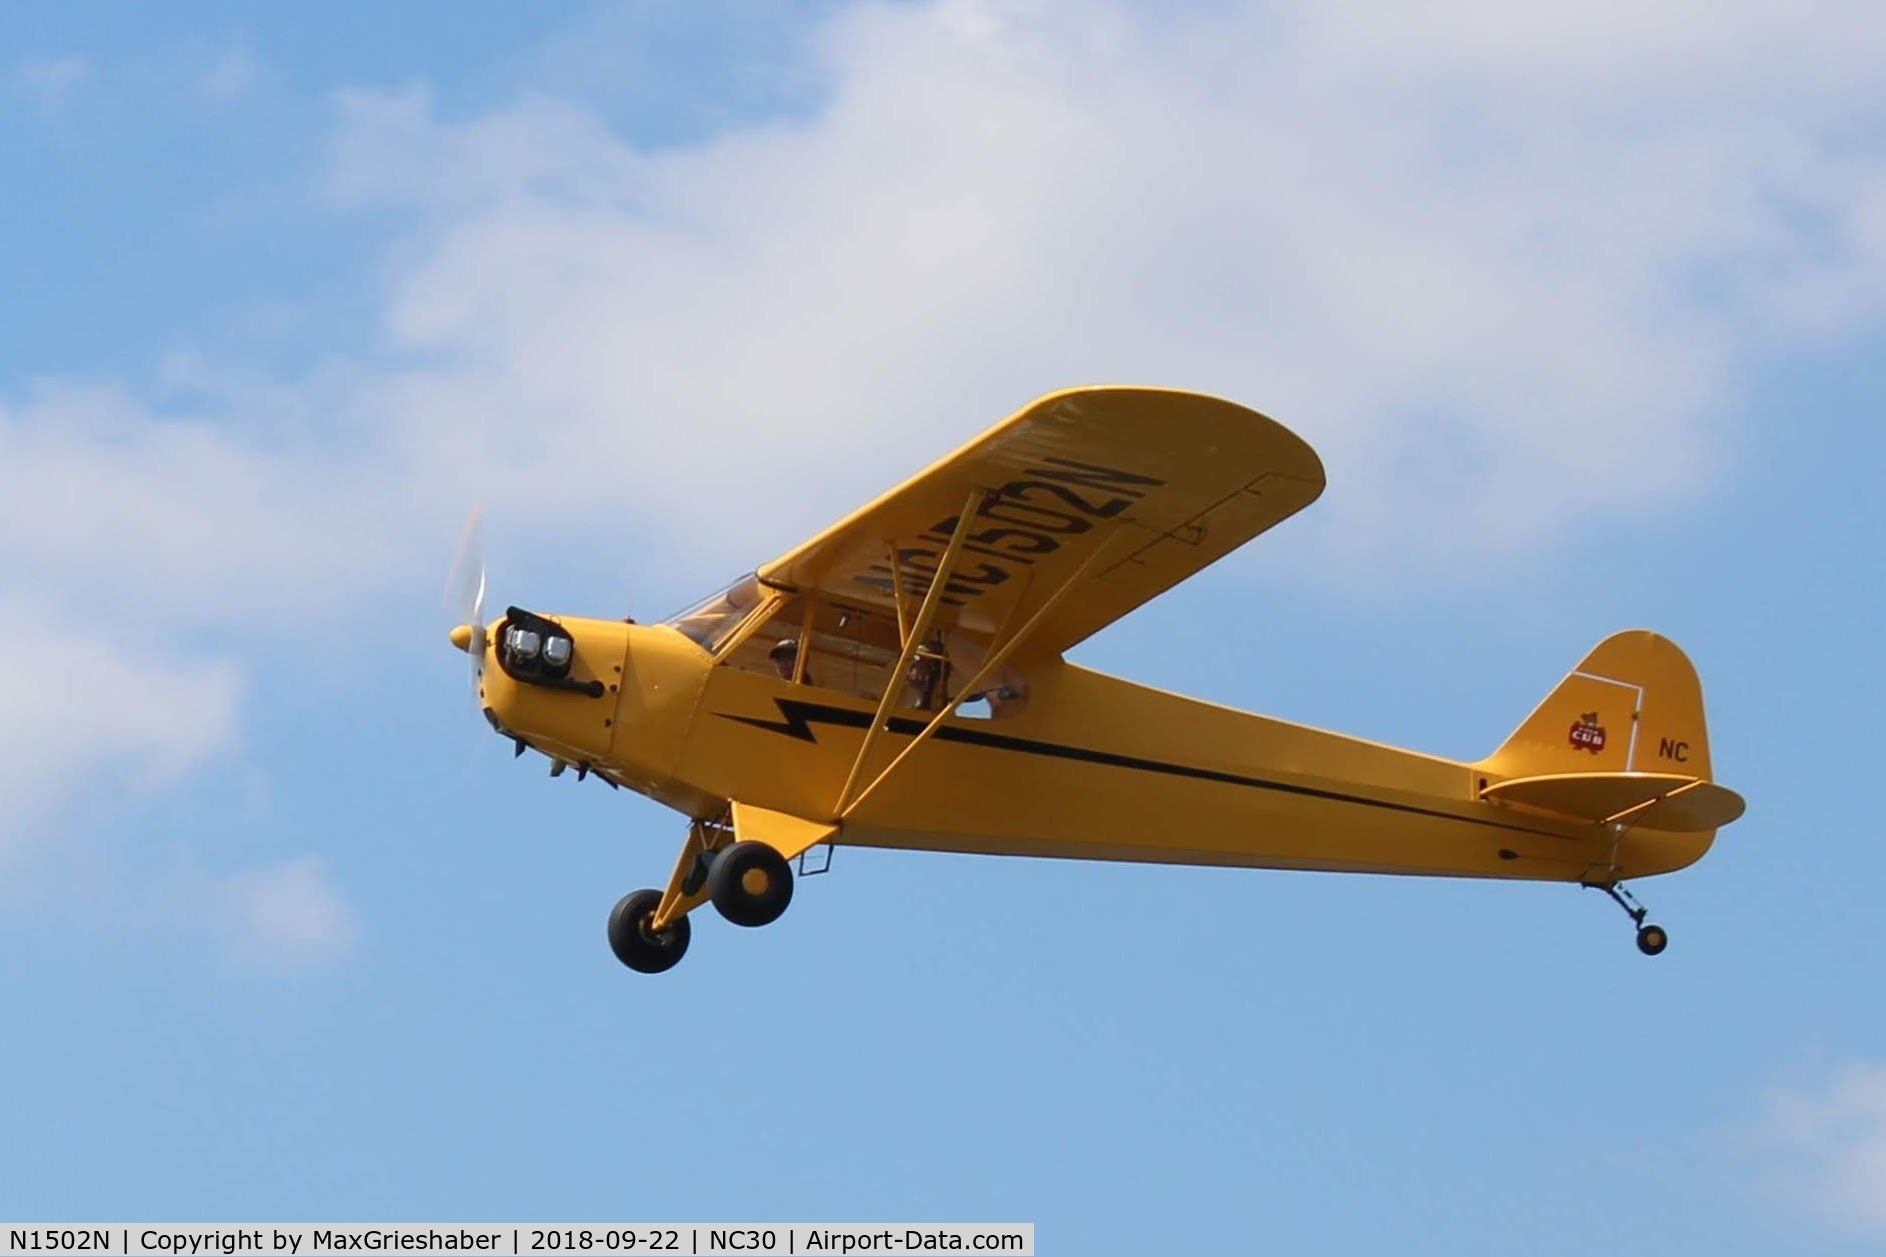 N1502N, 1947 Piper J3C-65 Cub Cub C/N 23032, Miller Air Park Fly In 2018